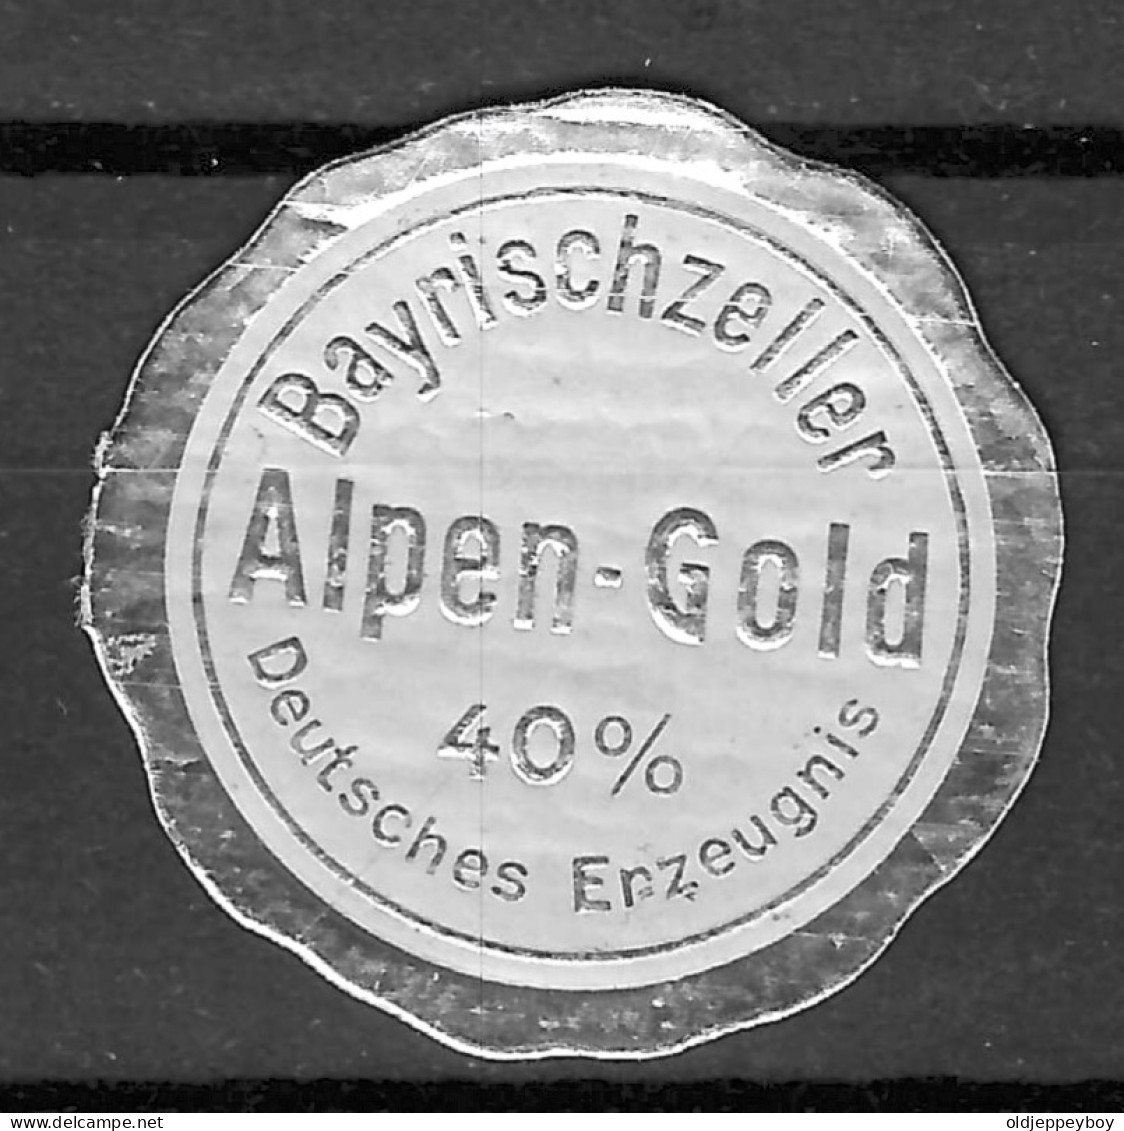 GERMANY Cinderella Vignette Reklamemarke  BAYRISCHZELLER Alpen-gold DEUTSCHES Erzeugnis  (Bad Tölz) - Erinnofilia